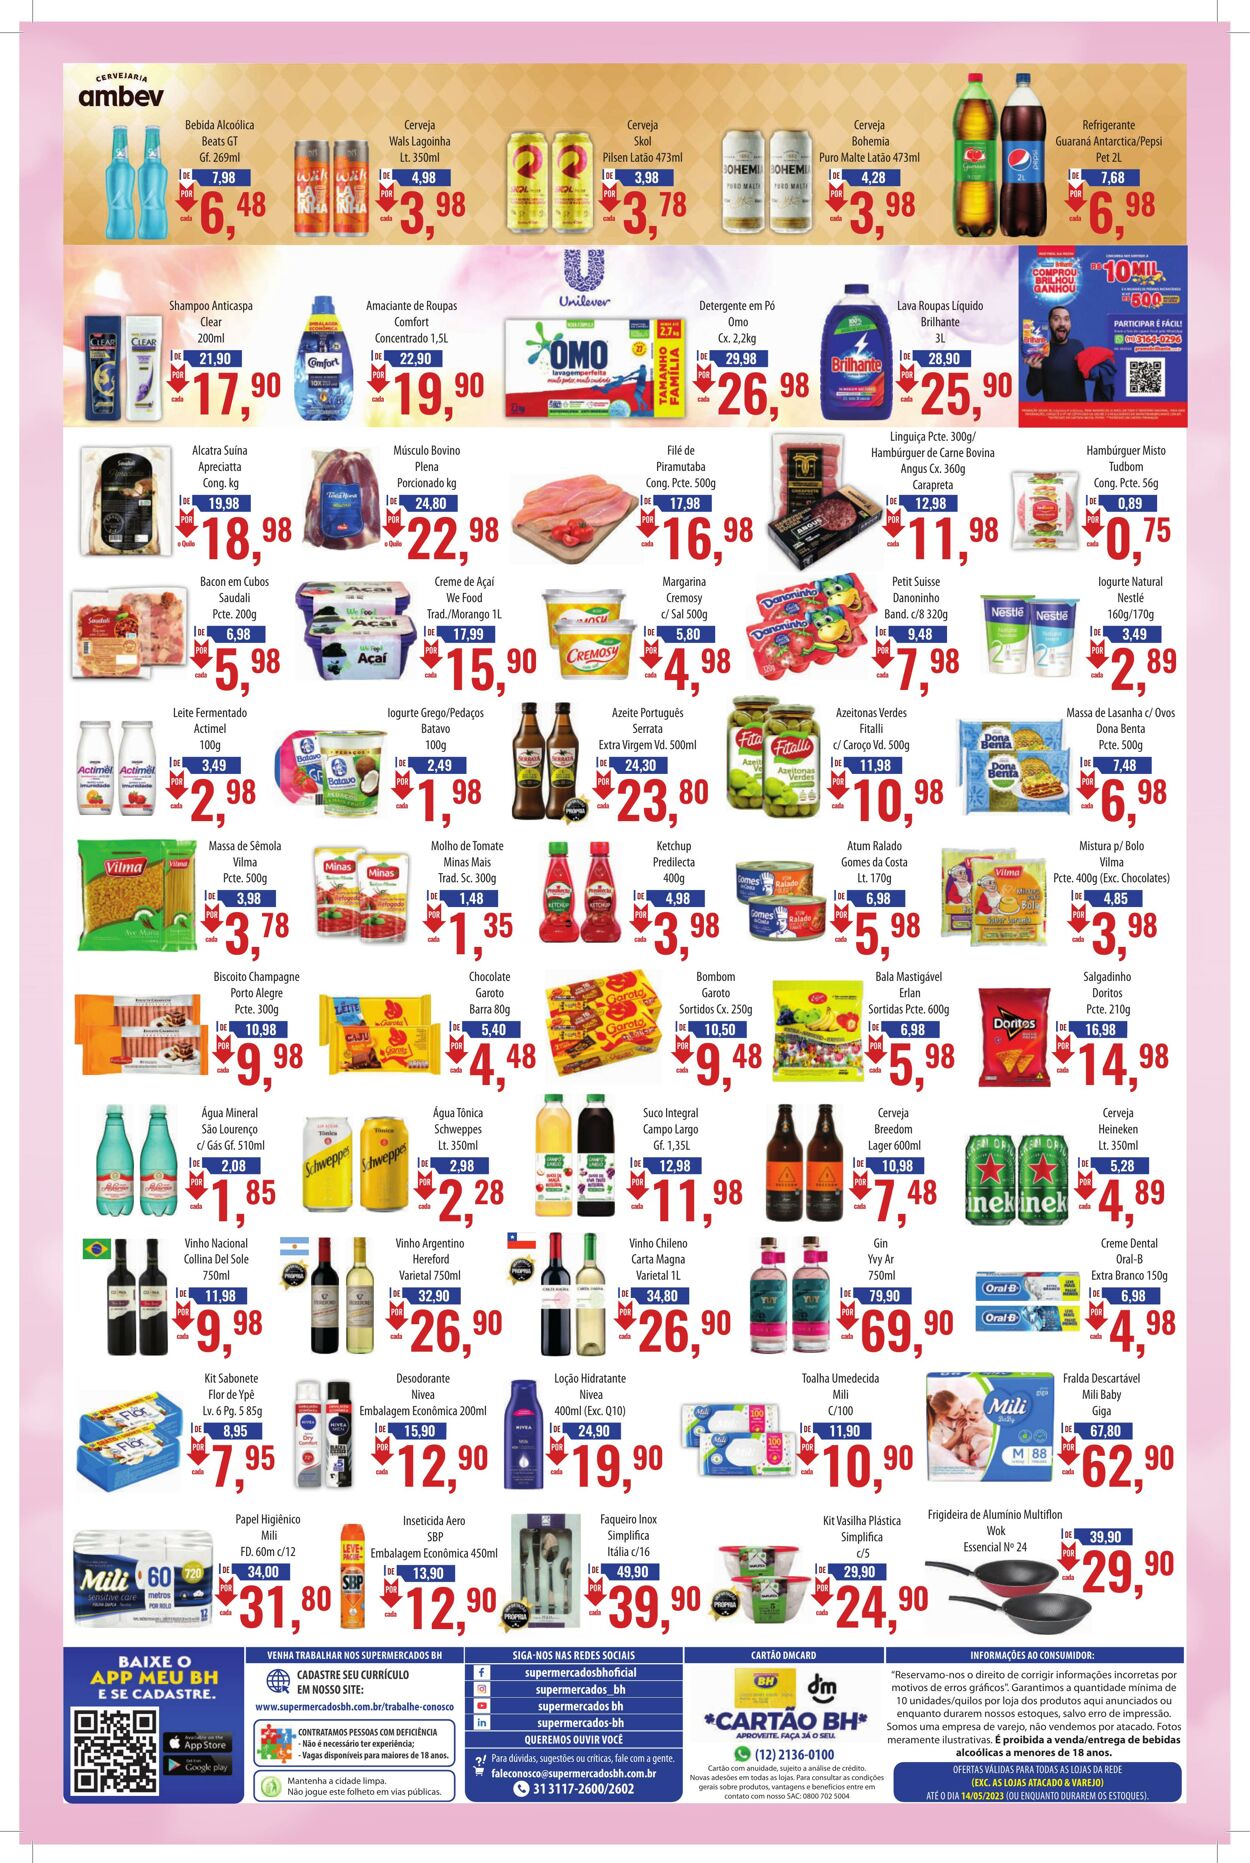 Folheto Supermercados BH 01.05.2023 - 14.05.2023